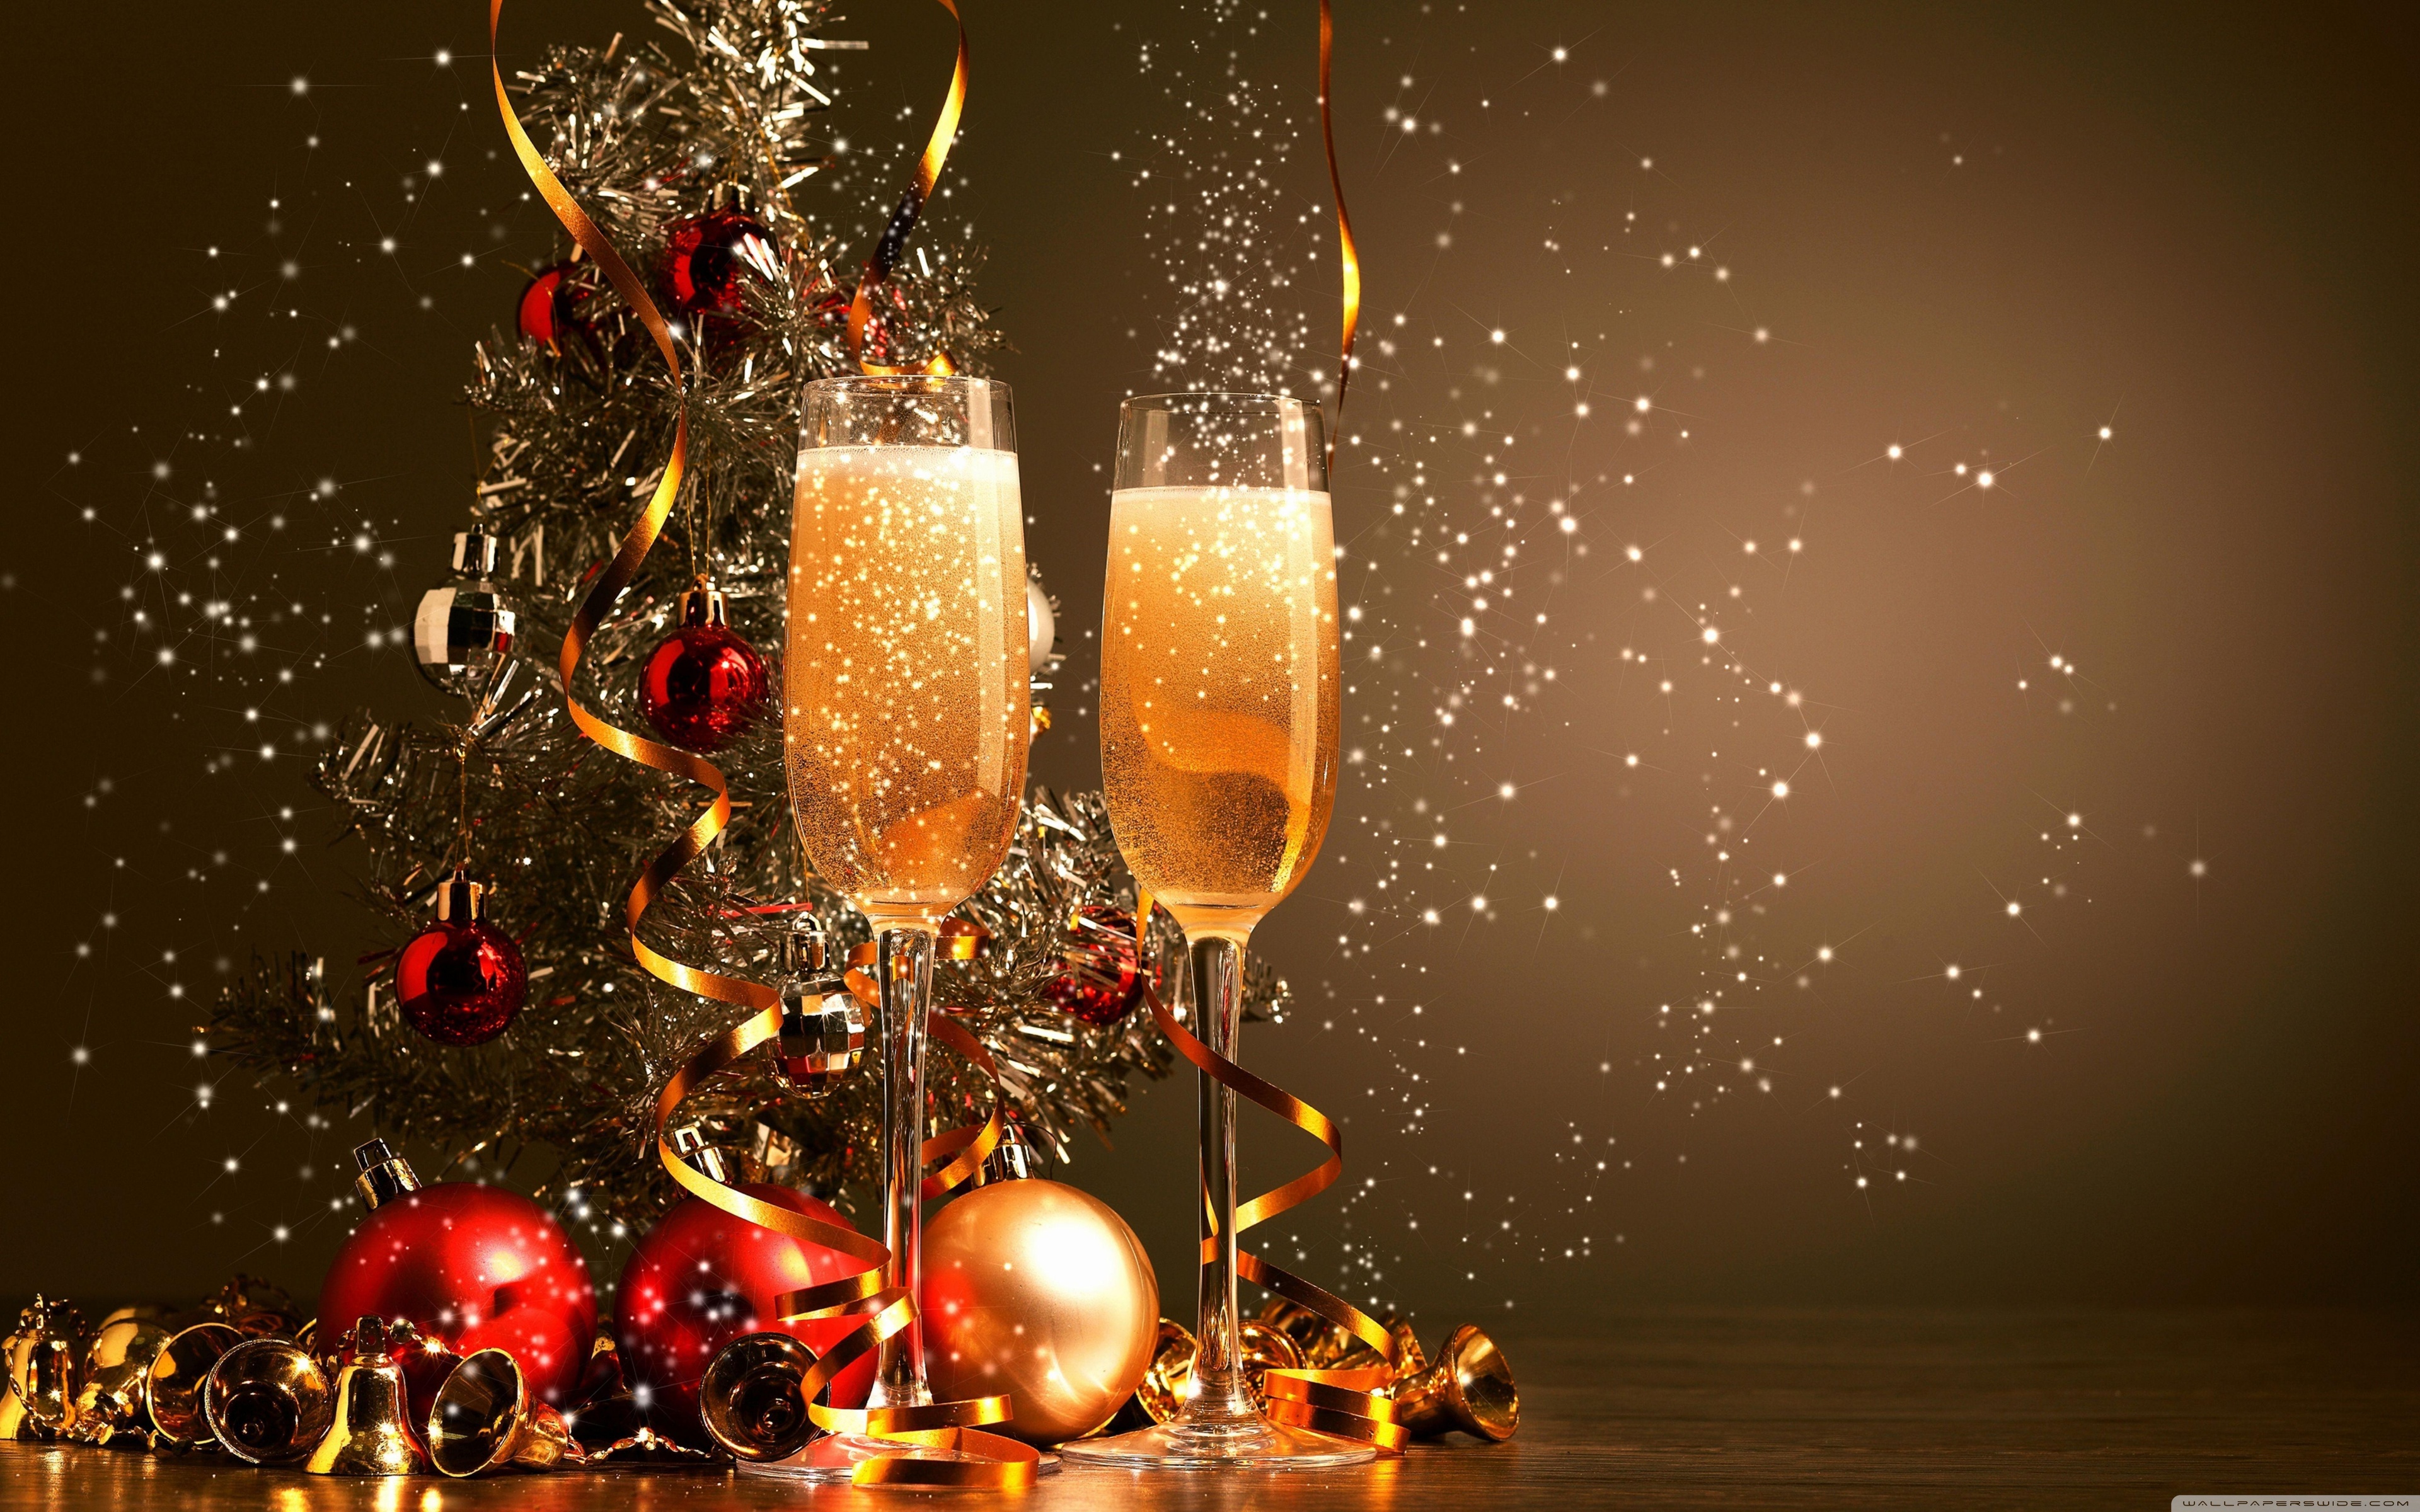 bonne année fond d'écran,boisson,verres à pied champagne,champagne,boisson alcoolisée,du vin